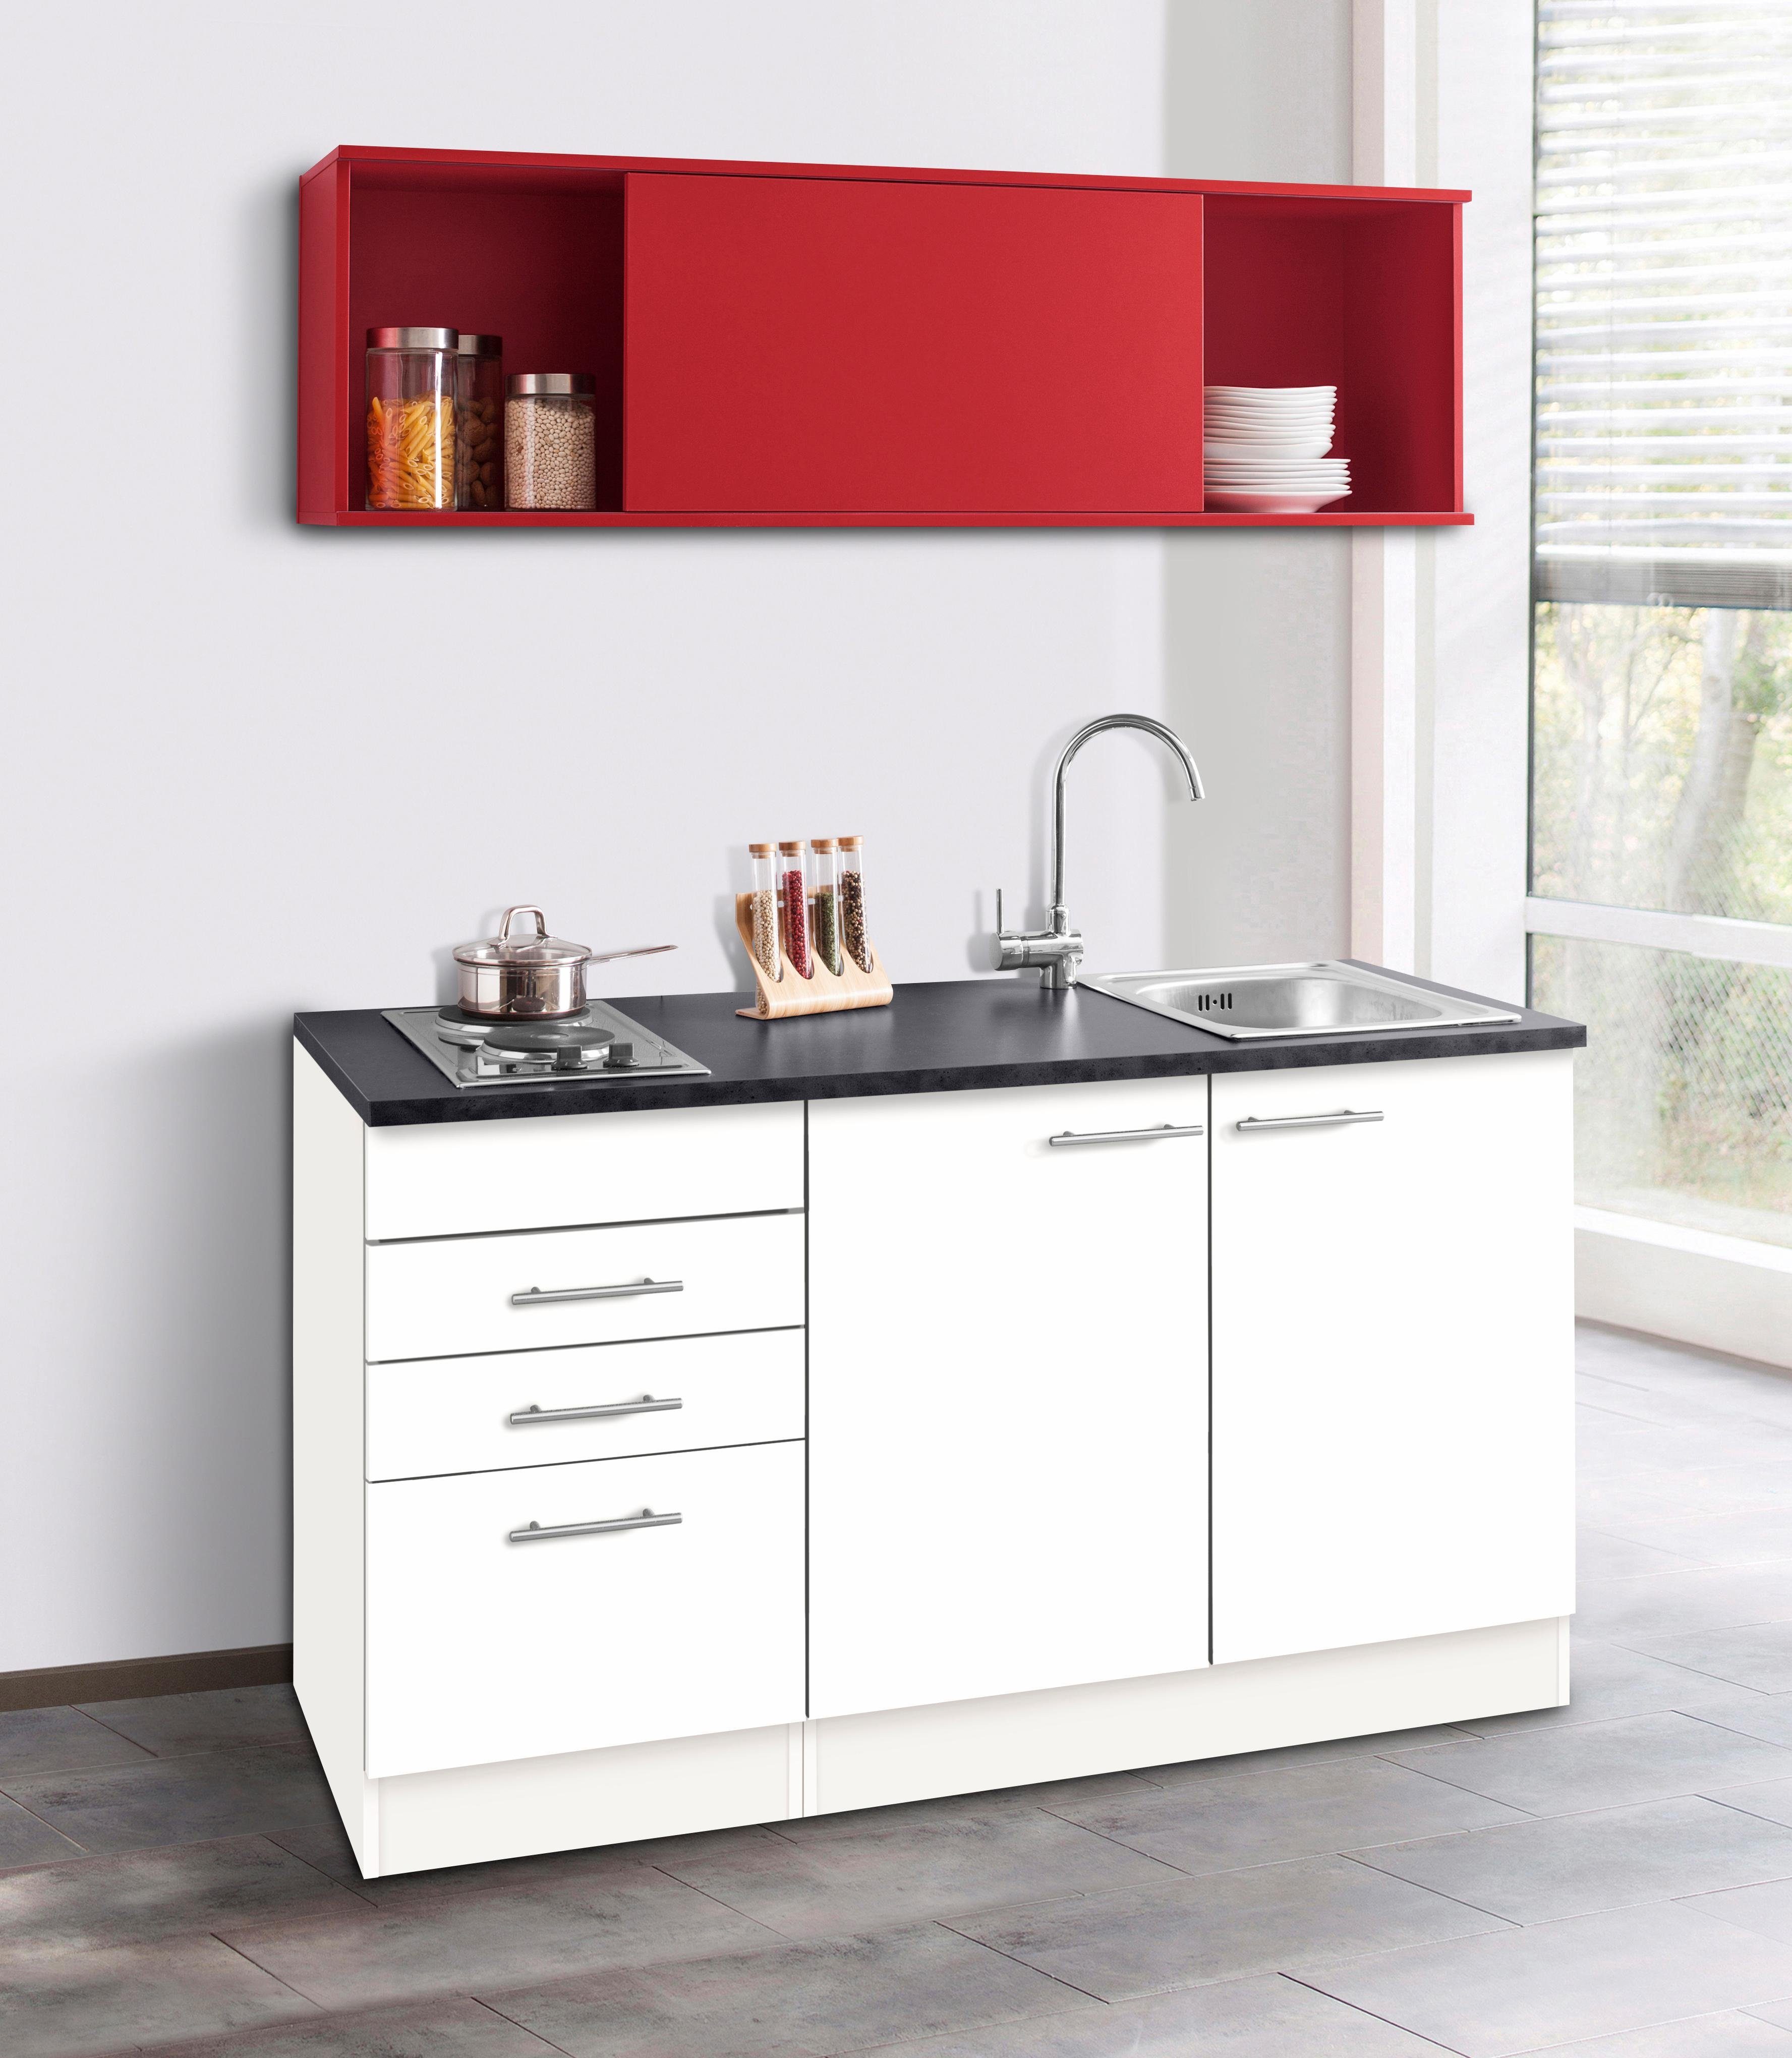 OPTIFIT Küchenzeile Mini, mit E-Geräten, Breite 150 cm weiß/rot/anthrazit | weiß